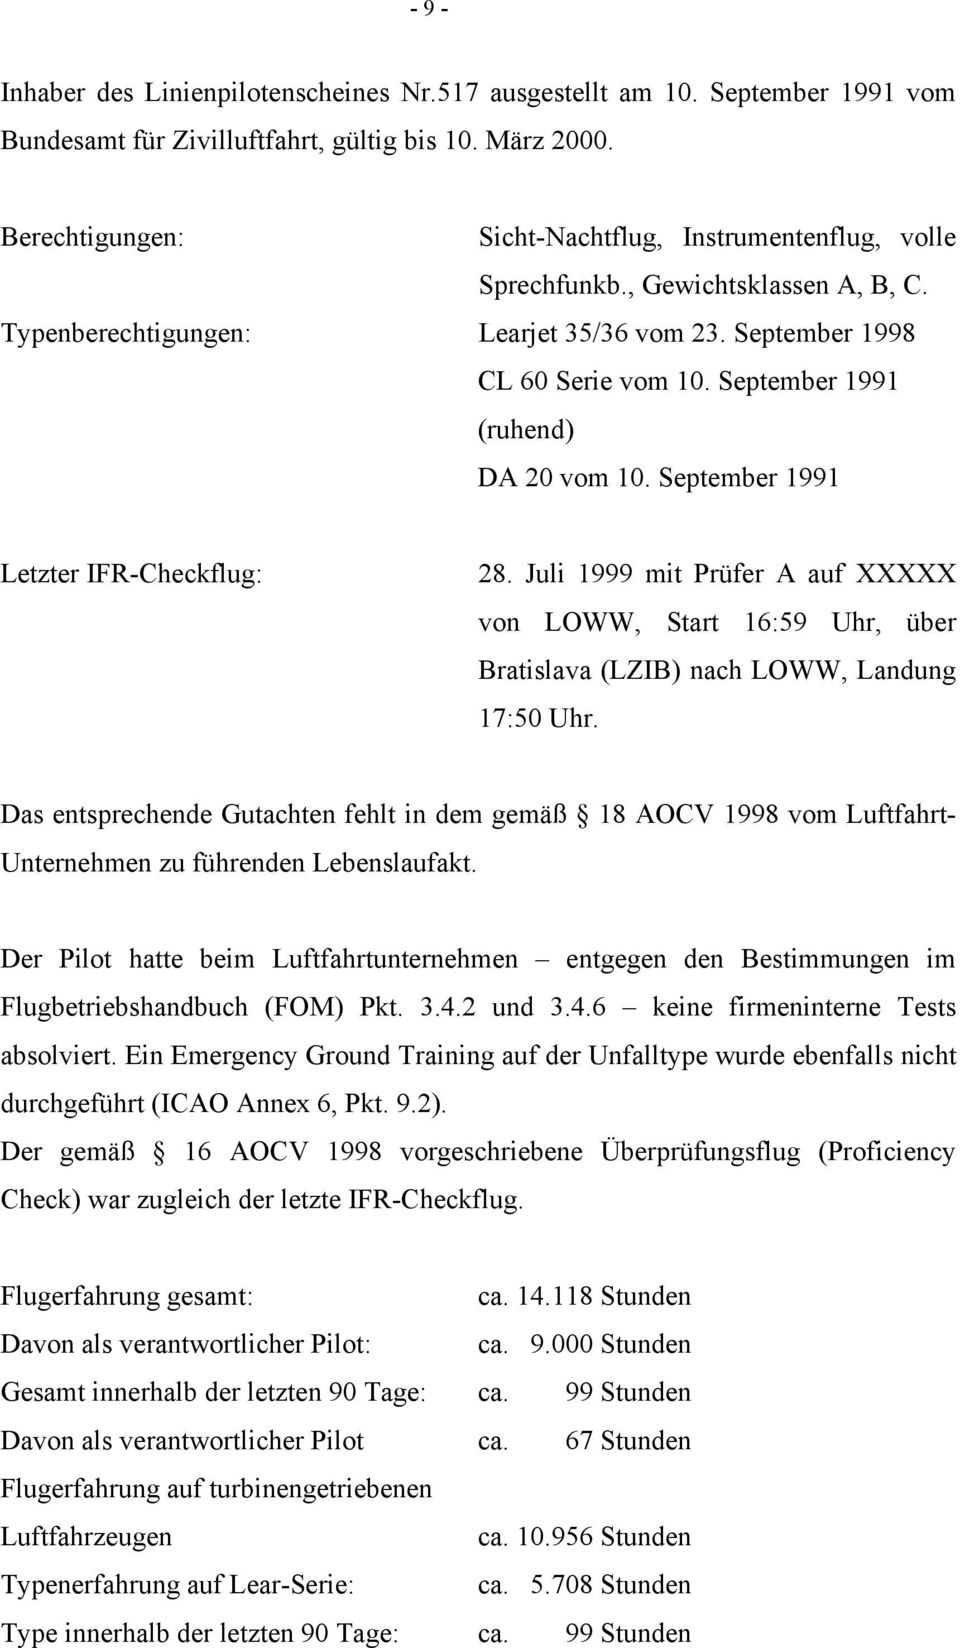 September 1991 (ruhend) DA 20 vom 10. September 1991 Letzter IFR-Checkflug: 28. Juli 1999 mit Prüfer A auf XXXXX von LOWW, Start 16:59 Uhr, über Bratislava (LZIB) nach LOWW, Landung 17:50 Uhr.